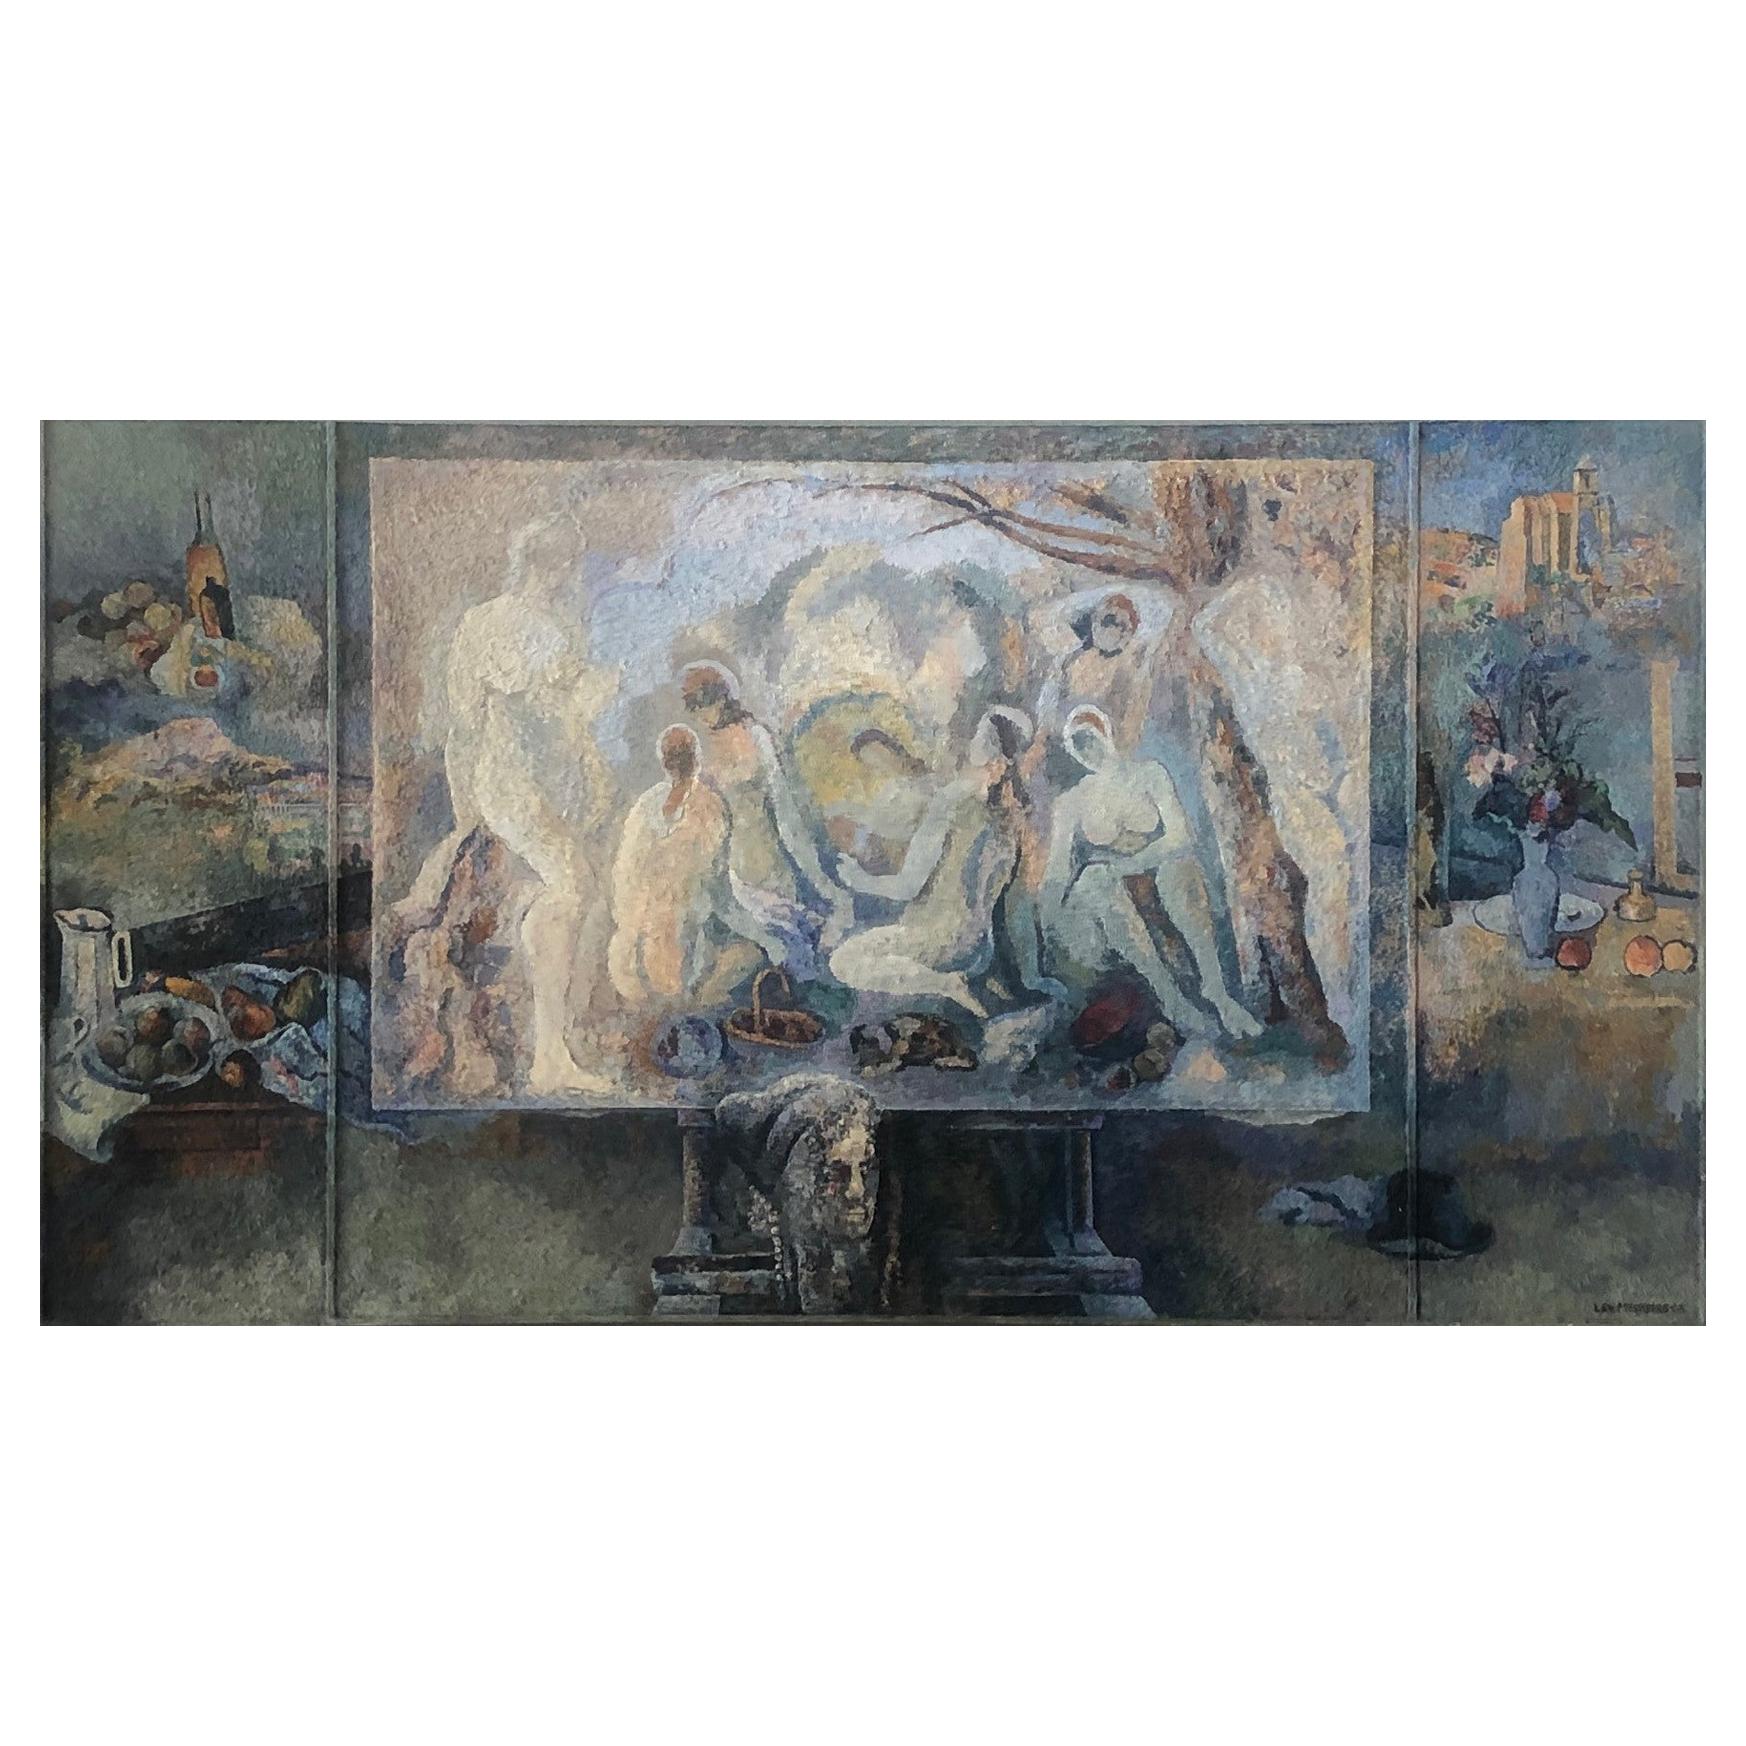 Lev Mezhberg, Hommage à Cézanne, peinture à l'huile sur toile, 2005